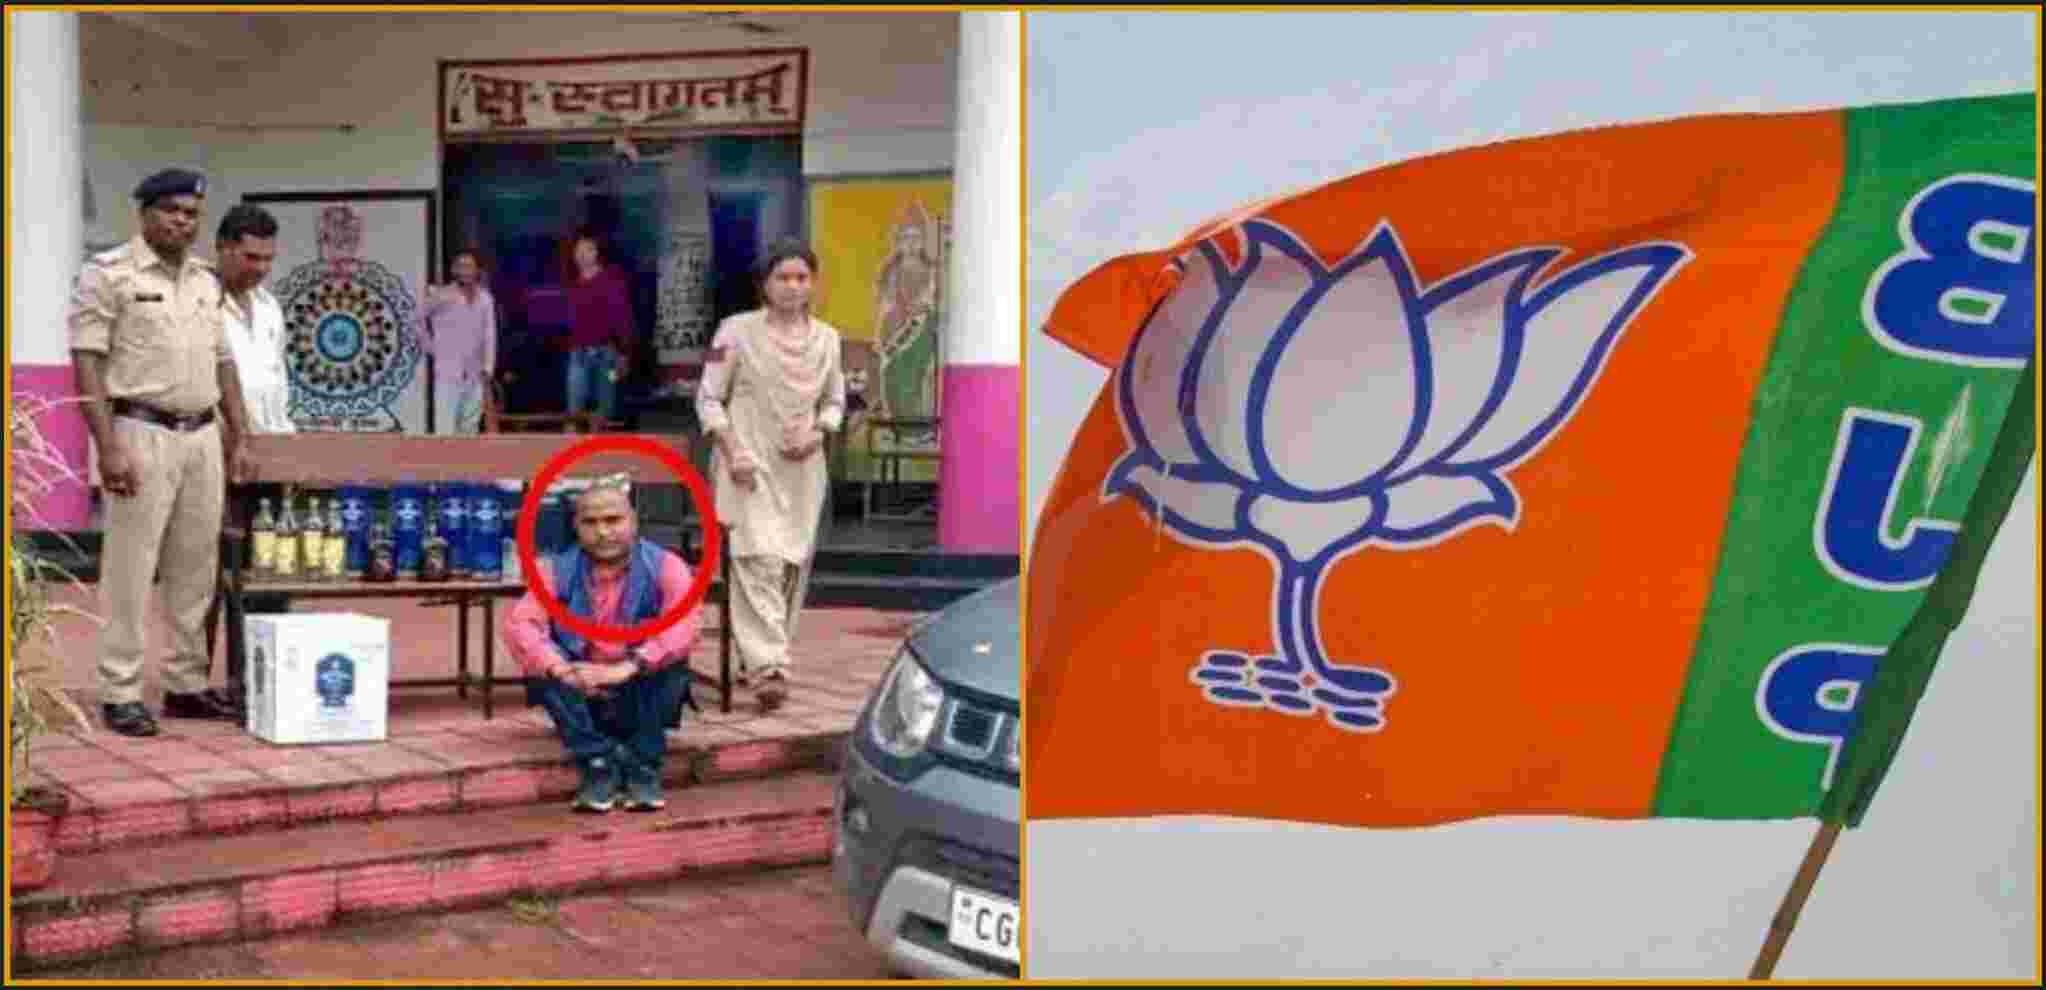 Chhattisgarh News : शराब की तस्करी करते पकड़ा गया BJP नेता, कार पर लिखा मिला जय सियाराम, कांग्रेस ने ट्वीट कर साधा निशाना